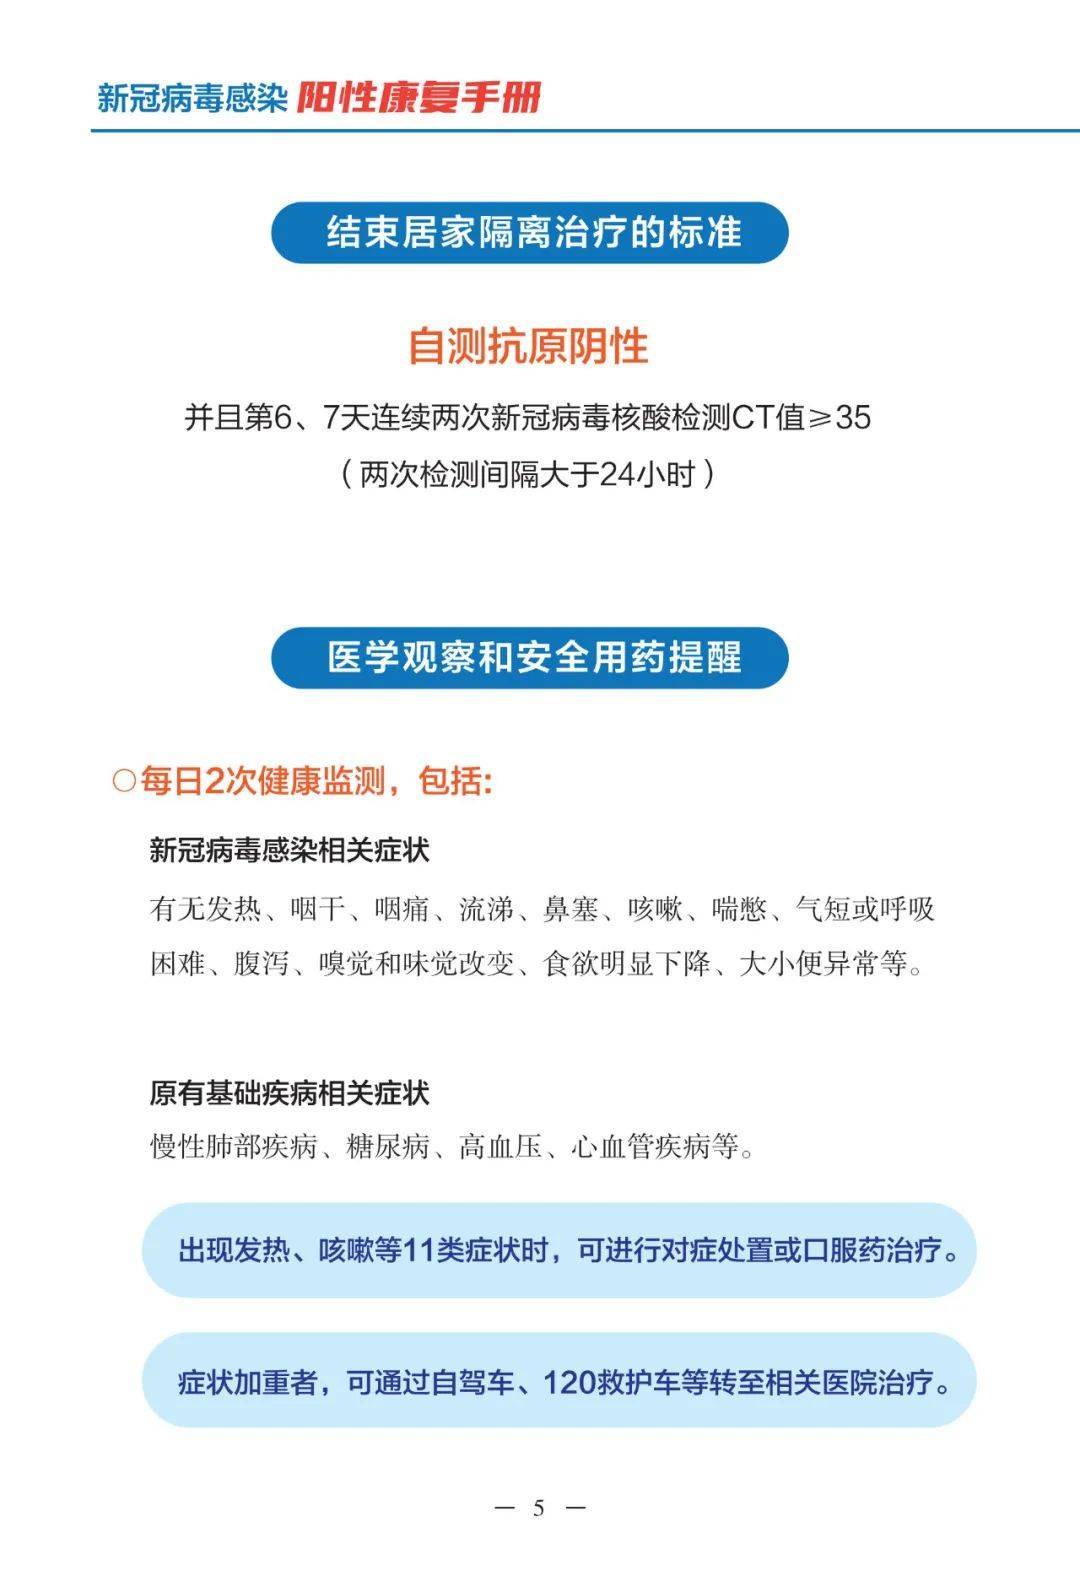 衡阳发布新冠病毒感染阳性康复手册